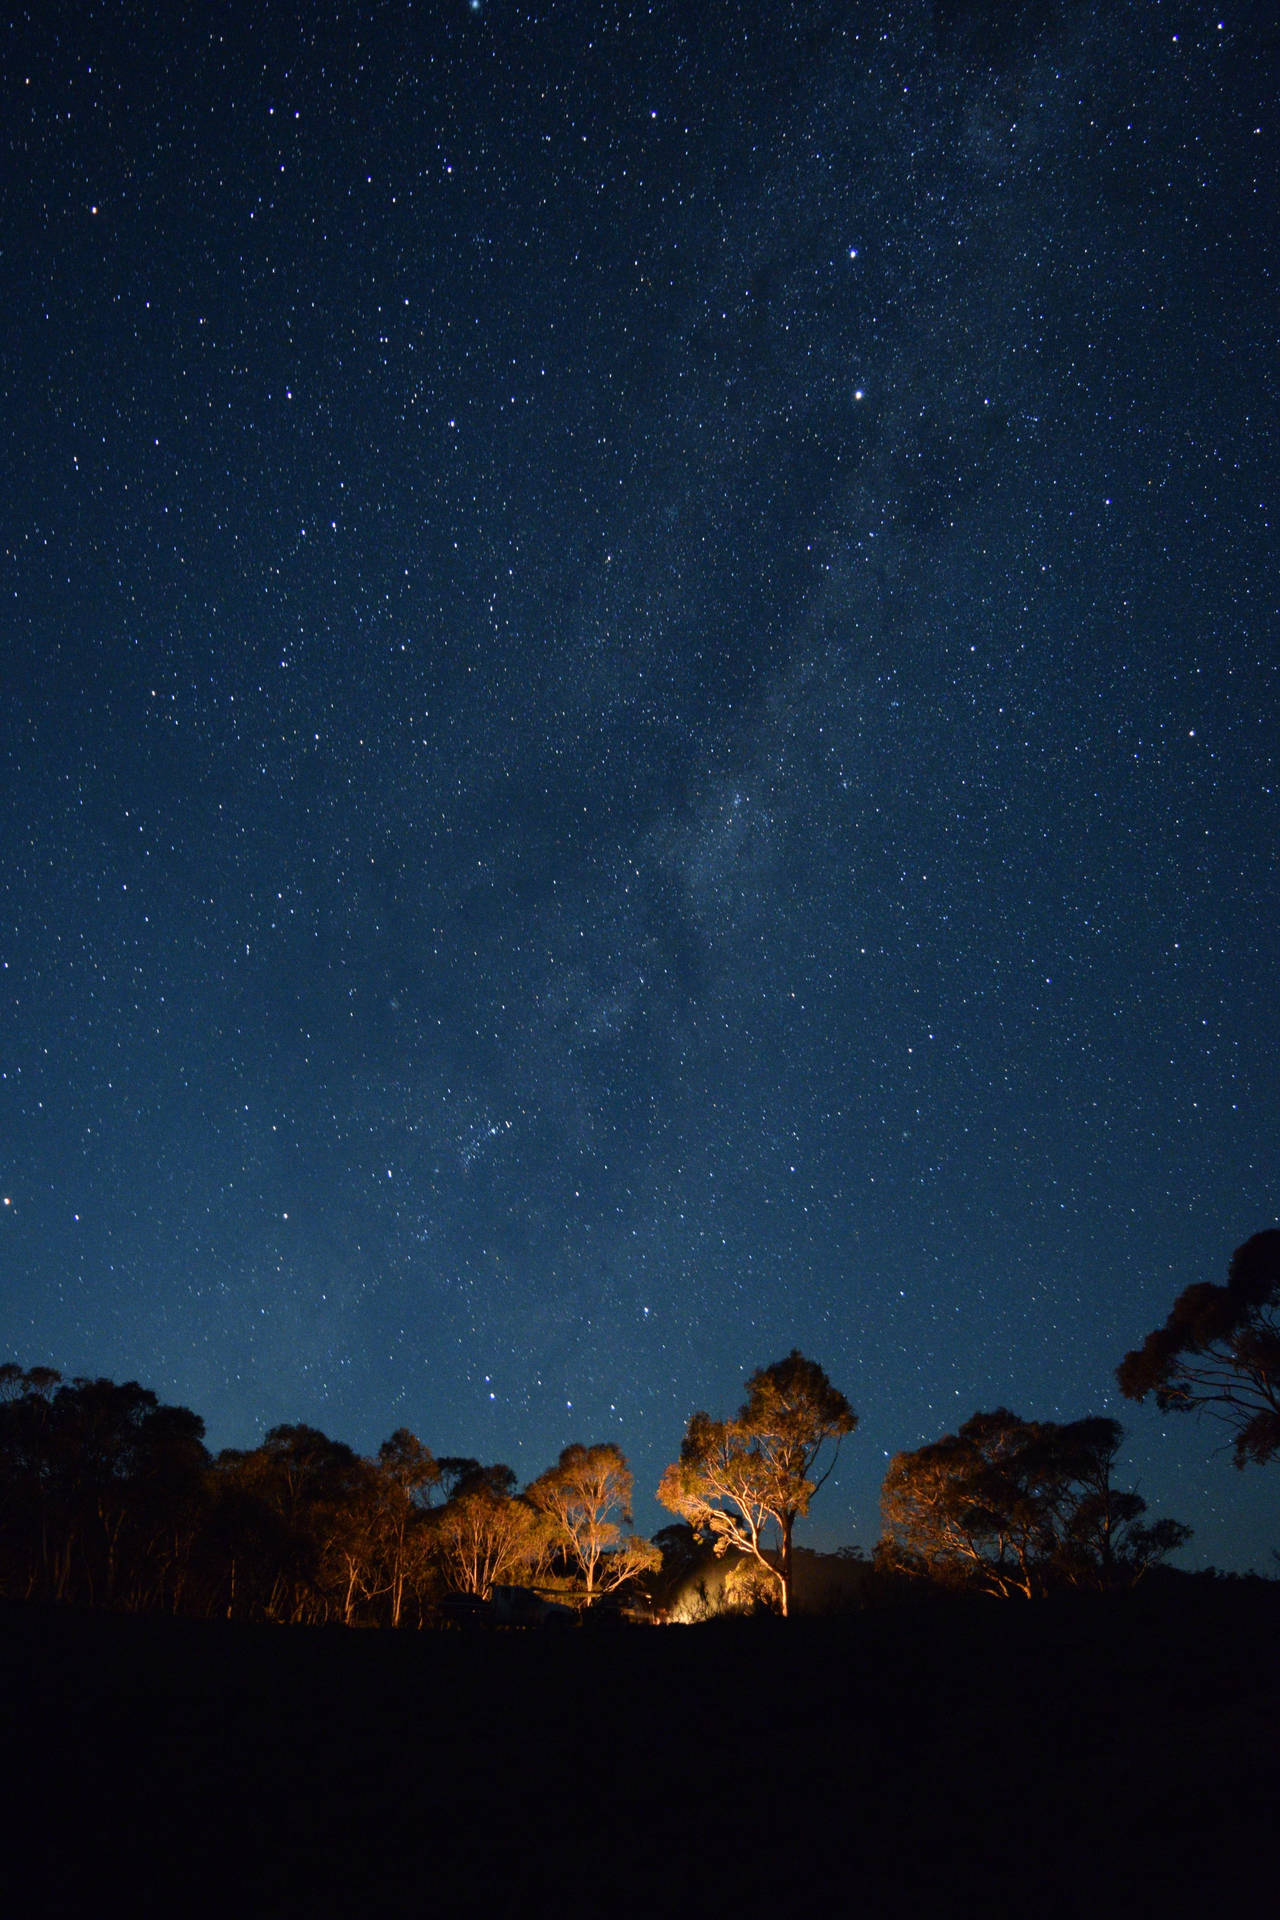 Australia Night Sky